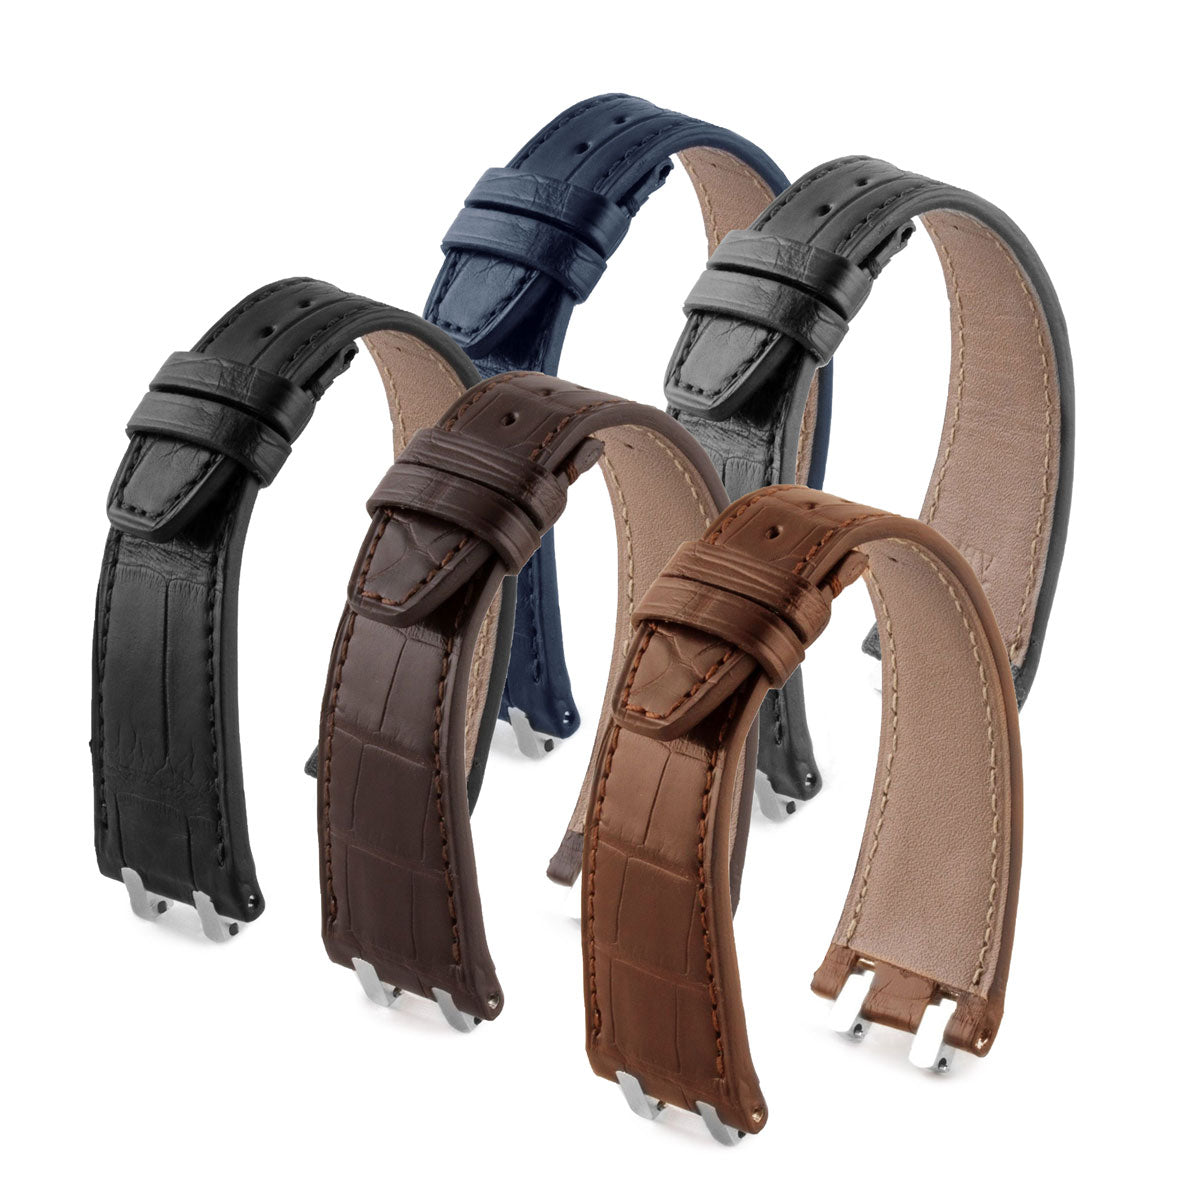 Audemars Piguet Royal Oak classique / Offshore / vintage - Bracelet-montre cuir - Alligator (noir / marron / gris / bleu) - watch band leather strap - ABP Concept -